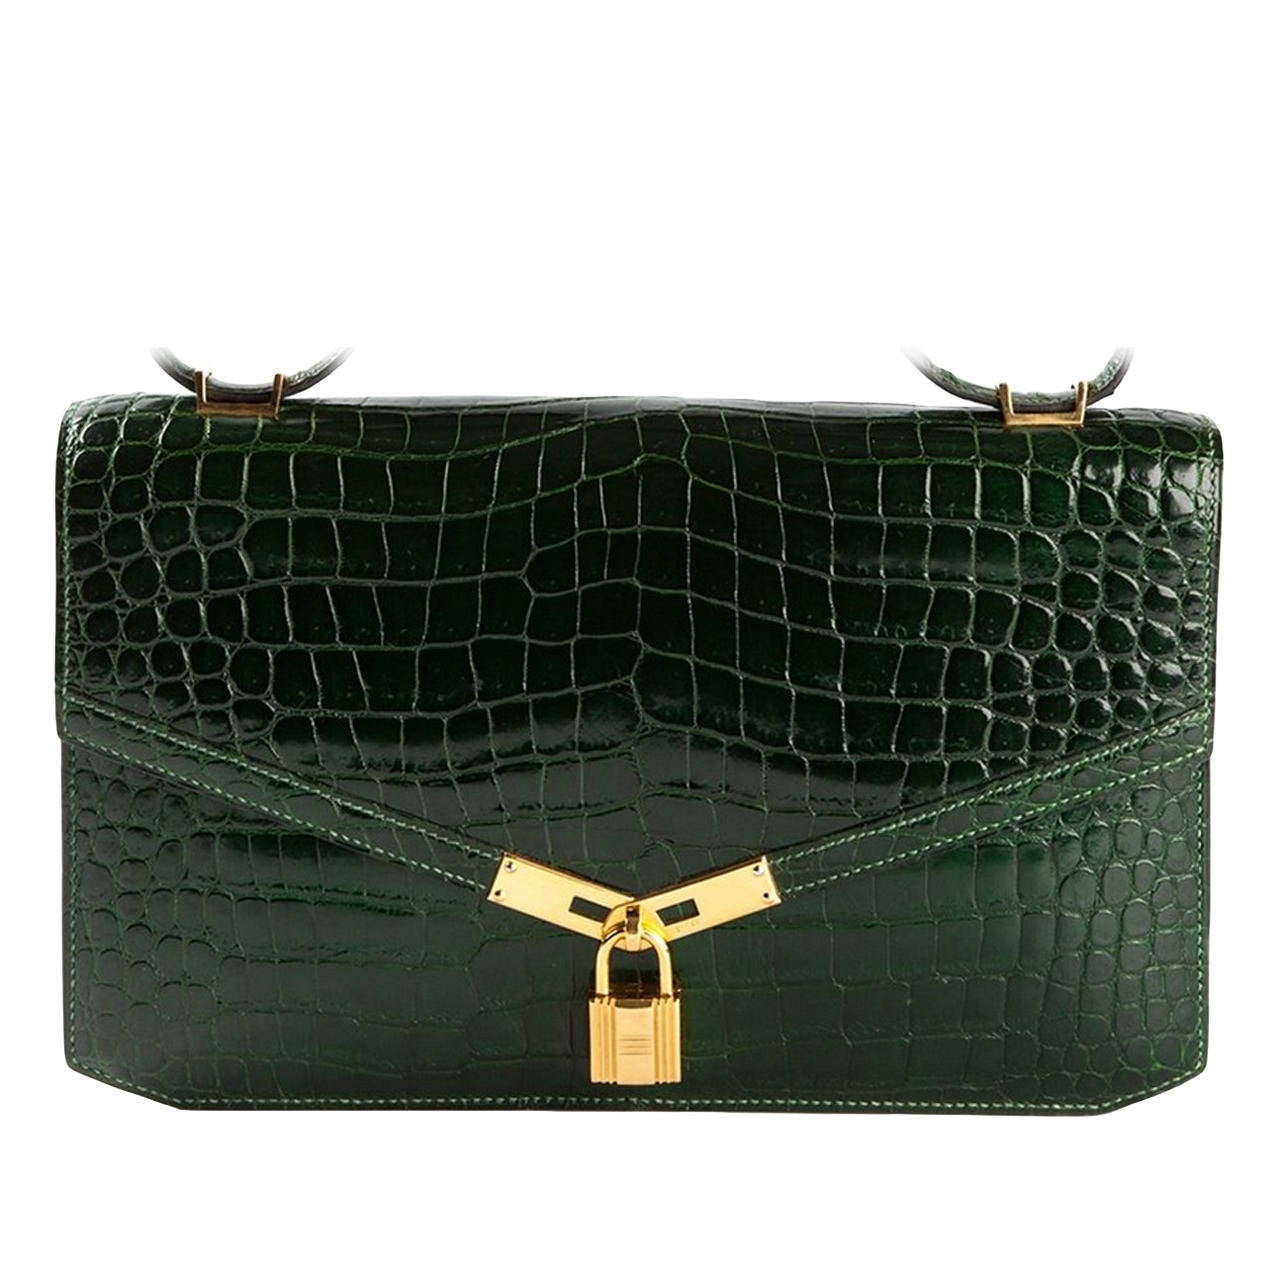 Exceptional Hermes Lock green Croco Handbag